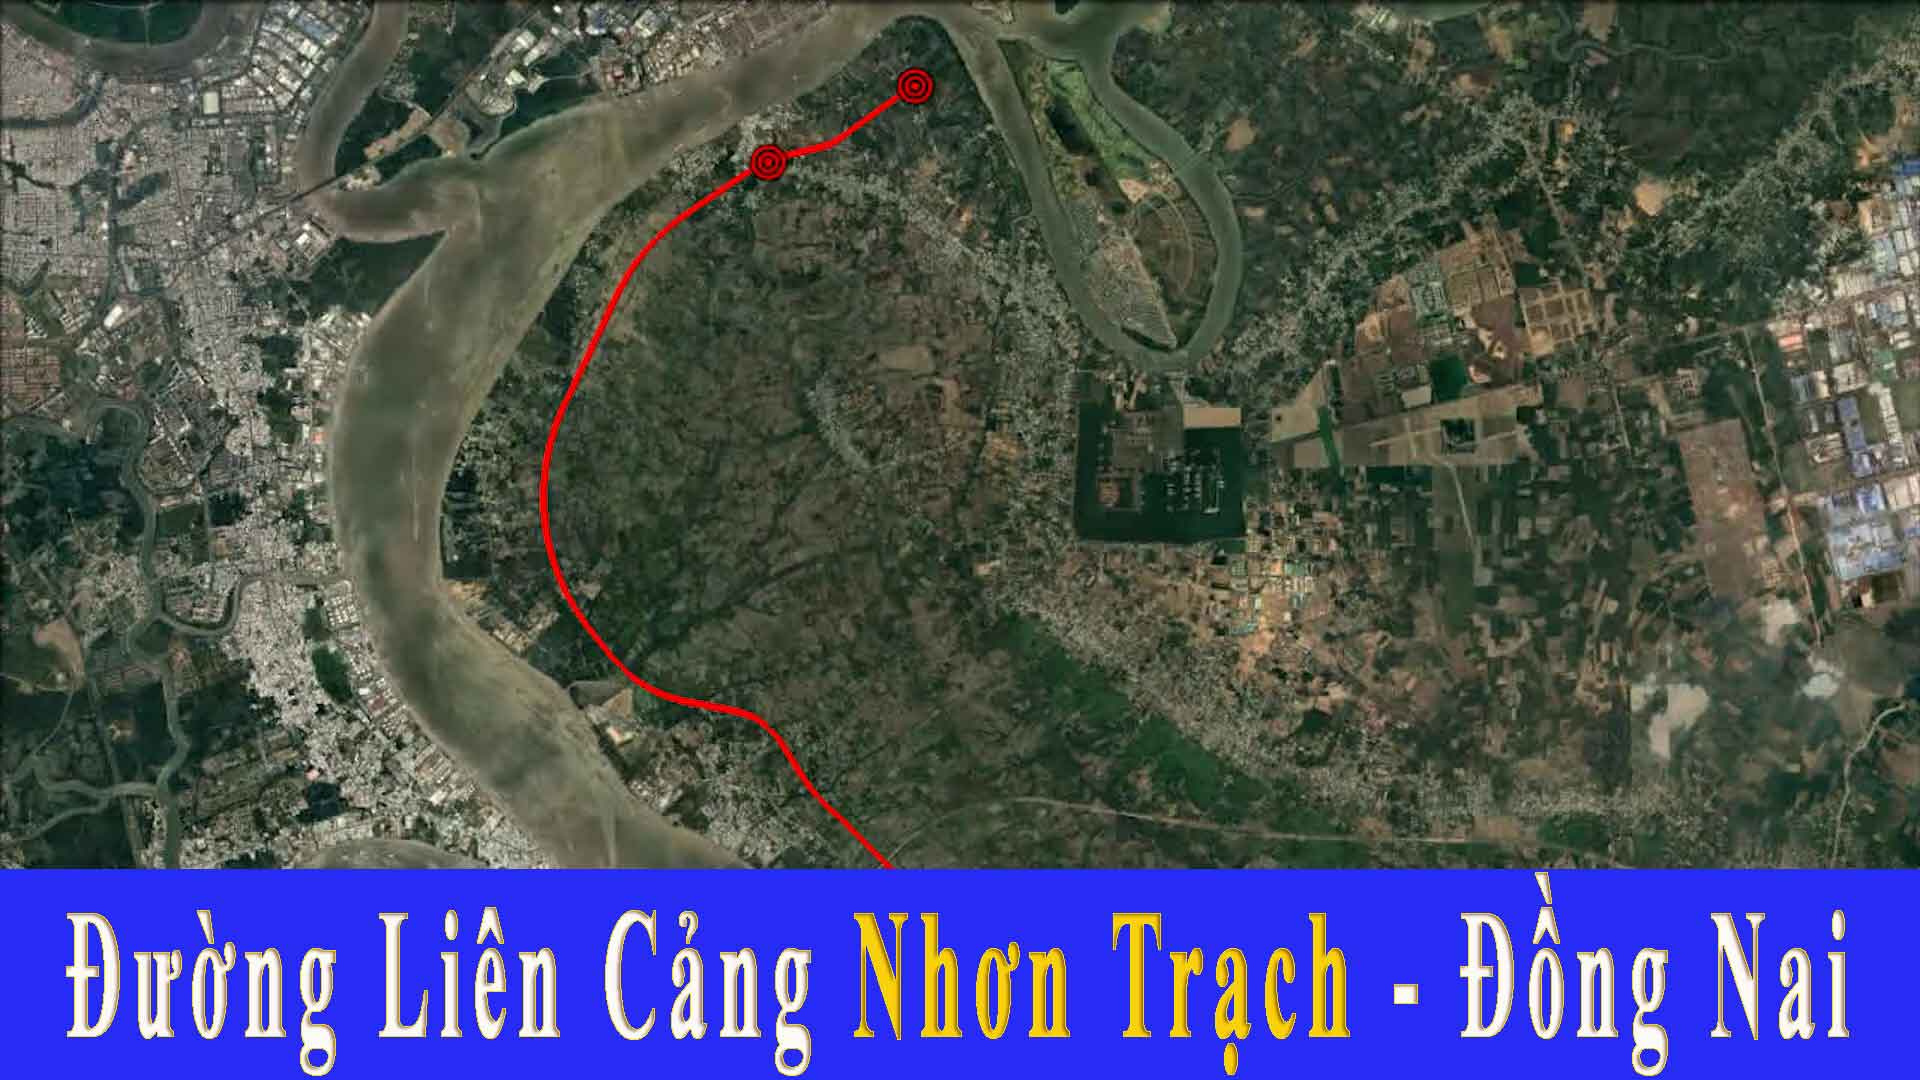 Thông tin quy hoạch đường Liên Cảng Nhơn Trạch Đồng Nai mới nhất